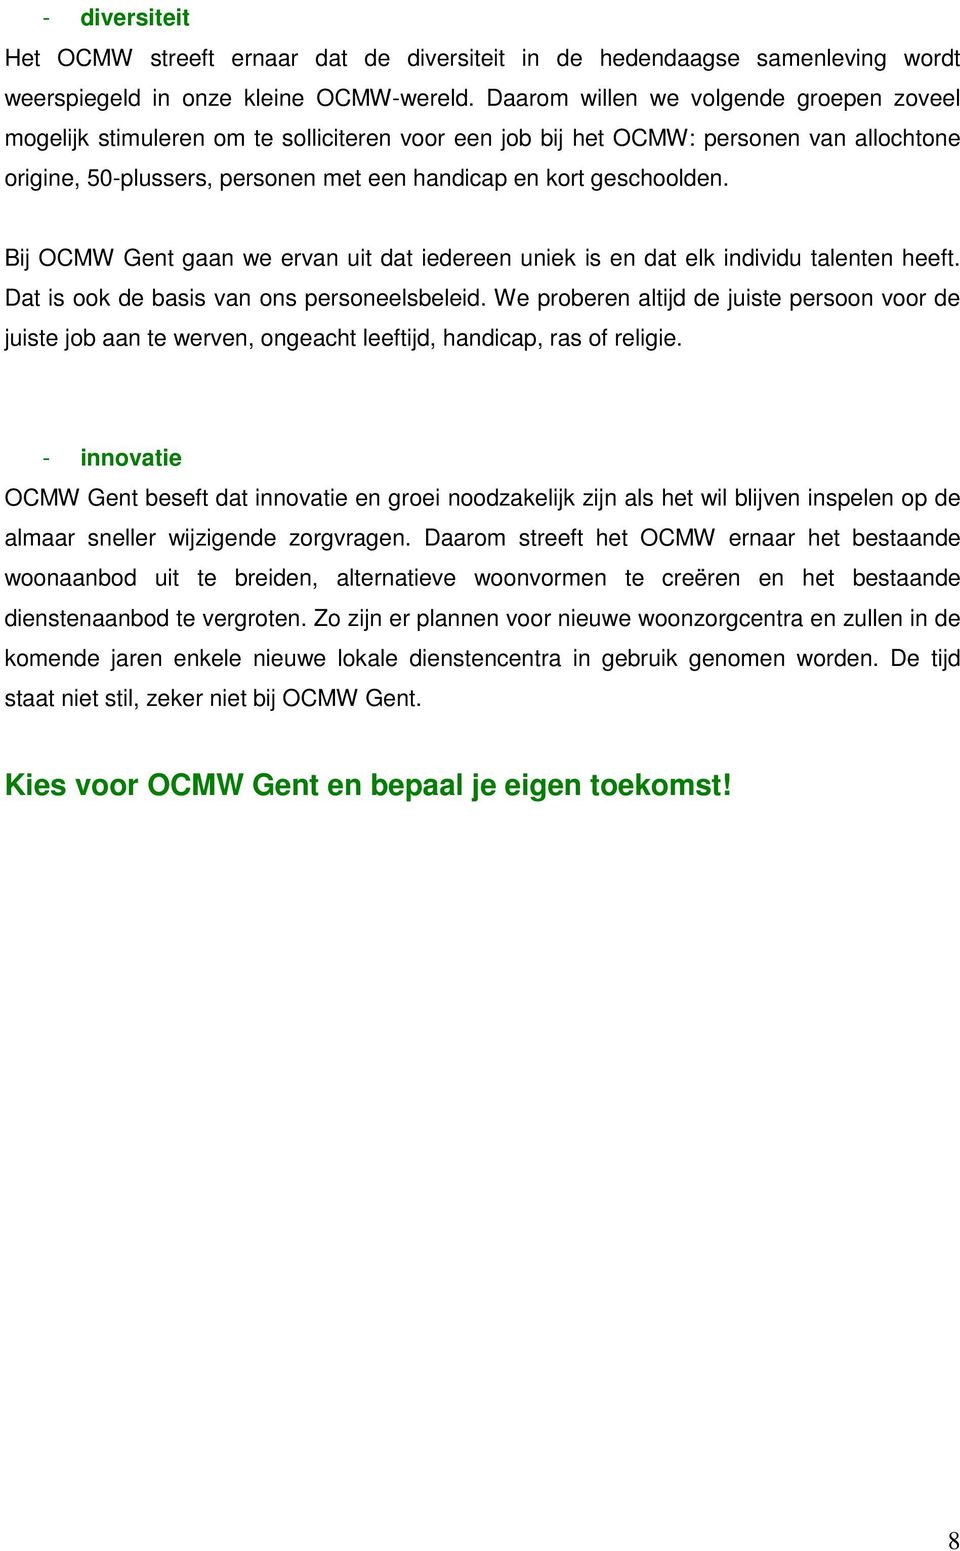 Bij OCMW Gent gaan we ervan uit dat iedereen uniek is en dat elk individu talenten heeft. Dat is ook de basis van ons personeelsbeleid.